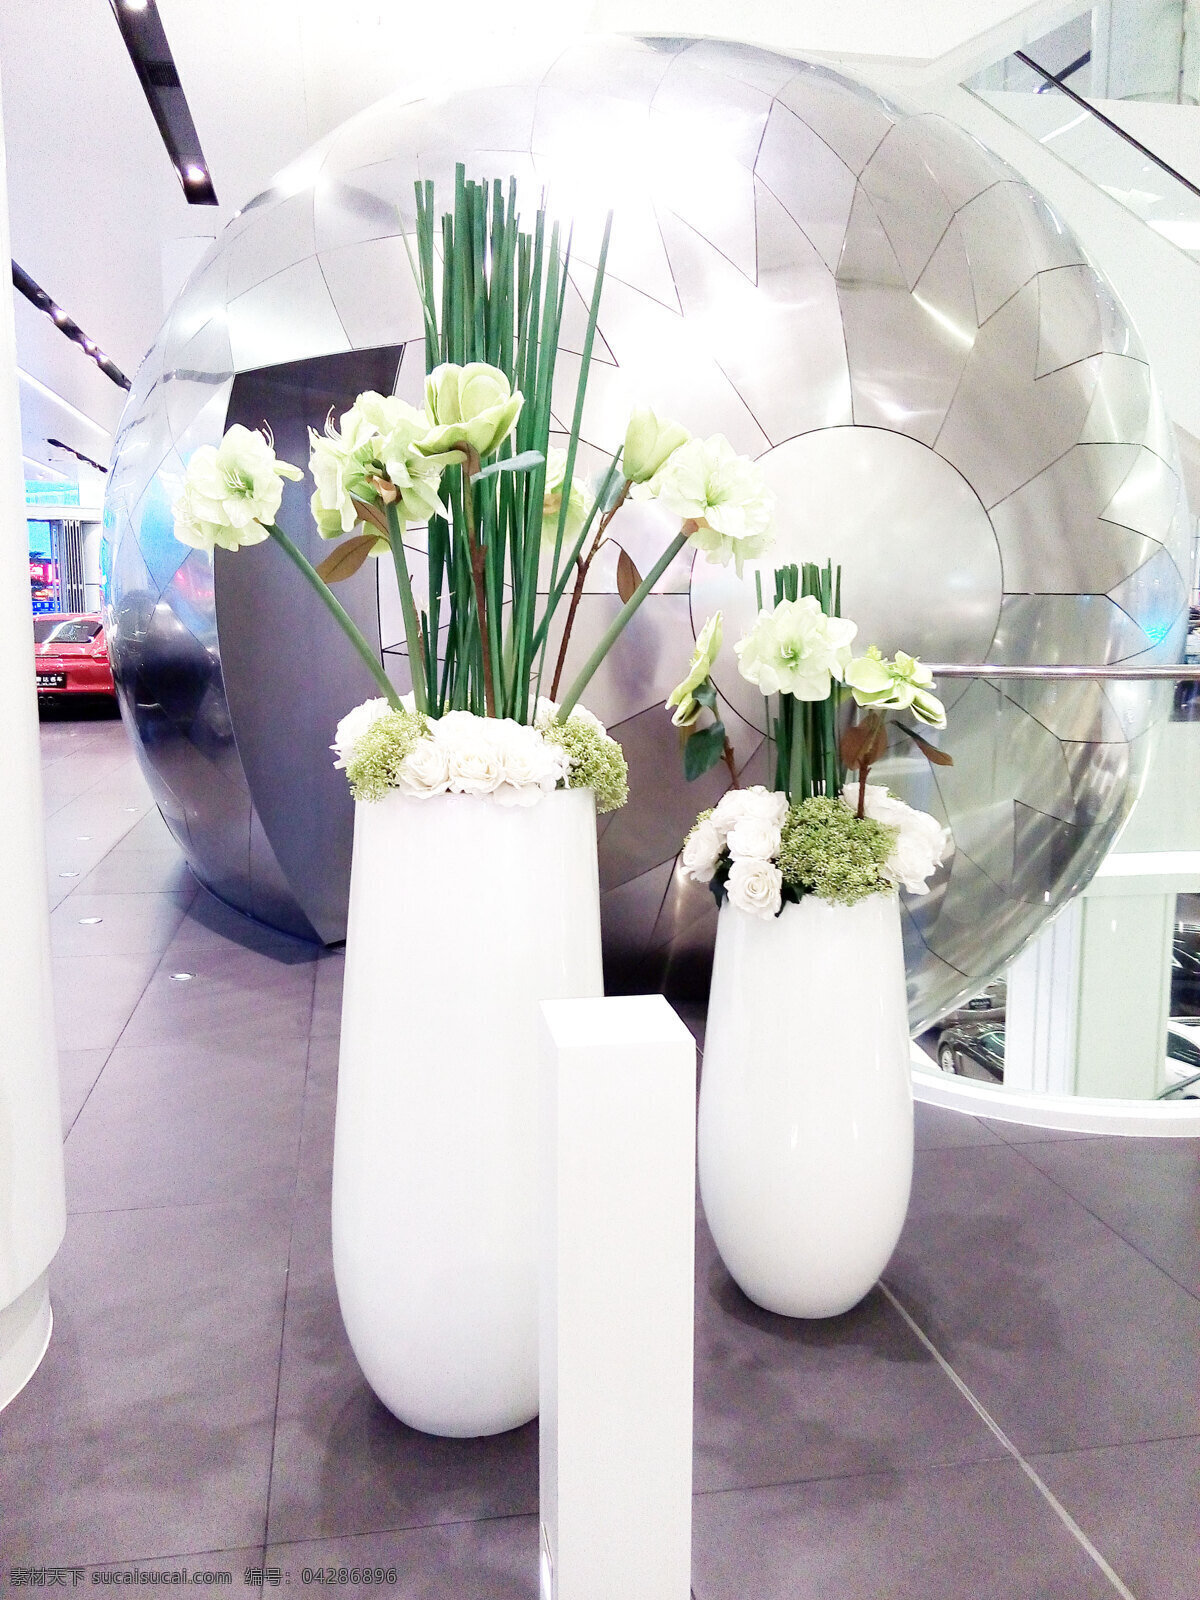 鸟笼 花瓶 模型 中国风 中式 效果图 3d模型 摆设 摆件 家装模型 展览模型 高端模型 模型素材